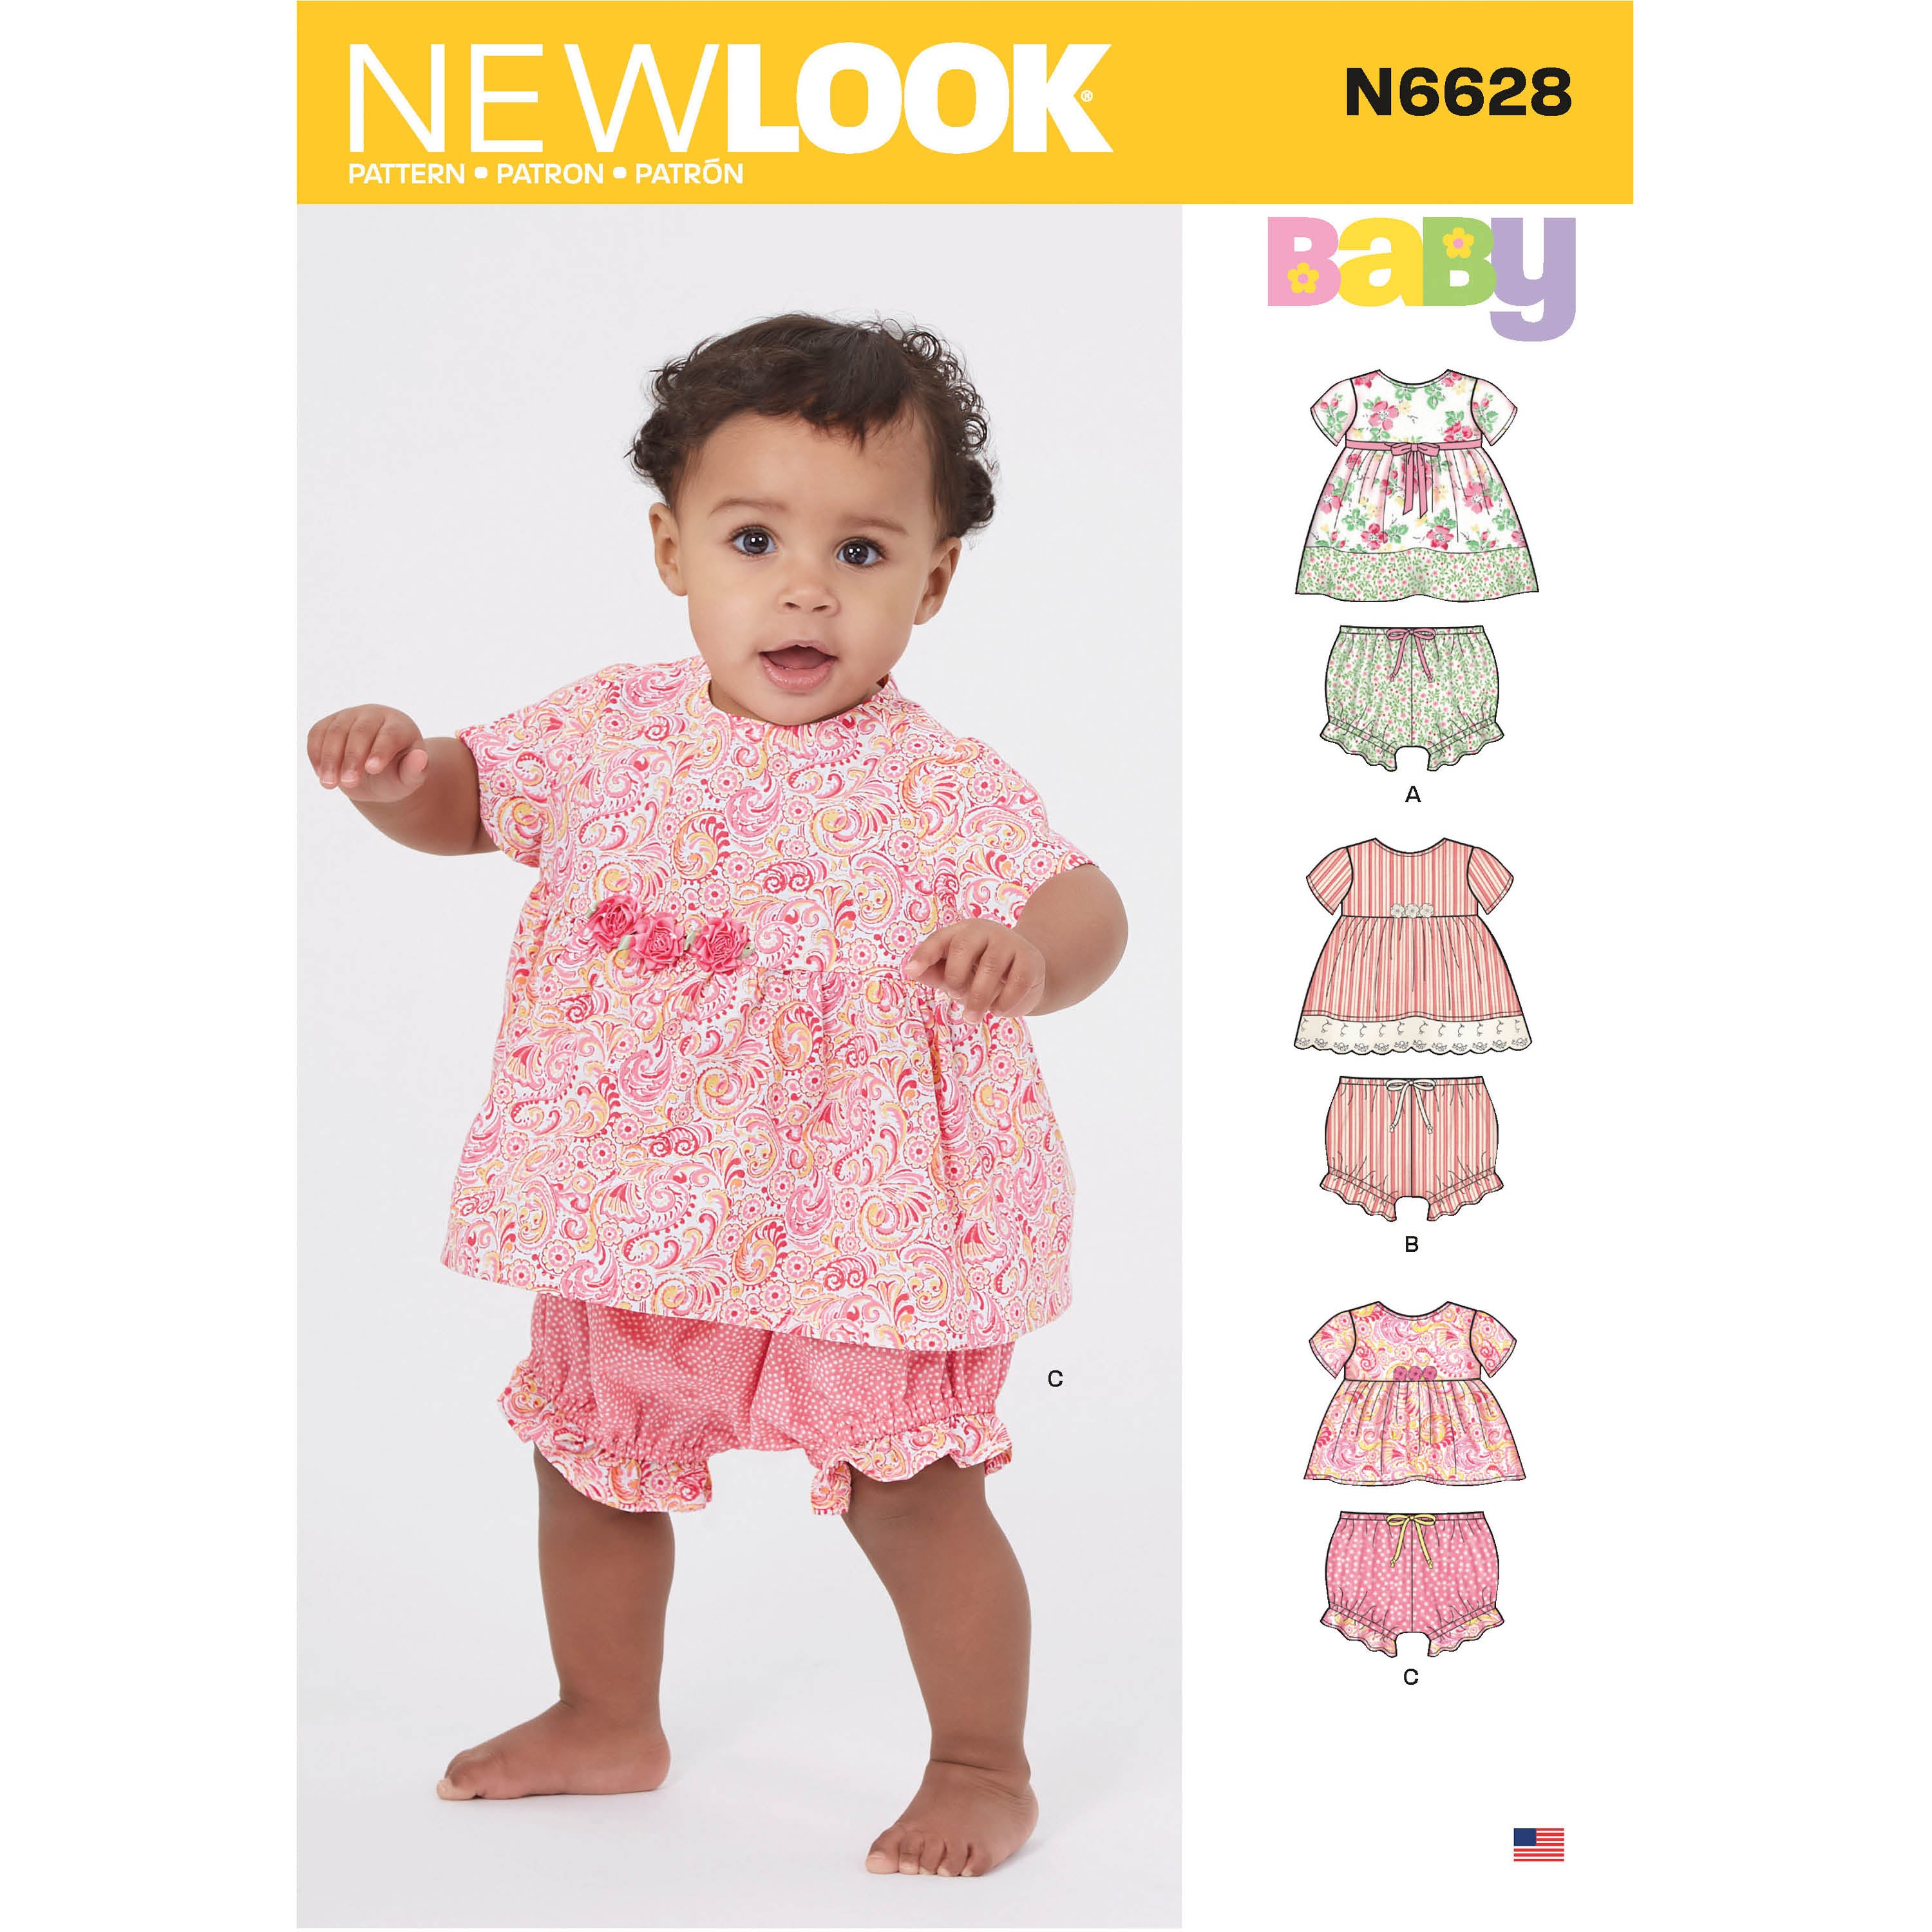 New Look Baby Dress and Panties N6628